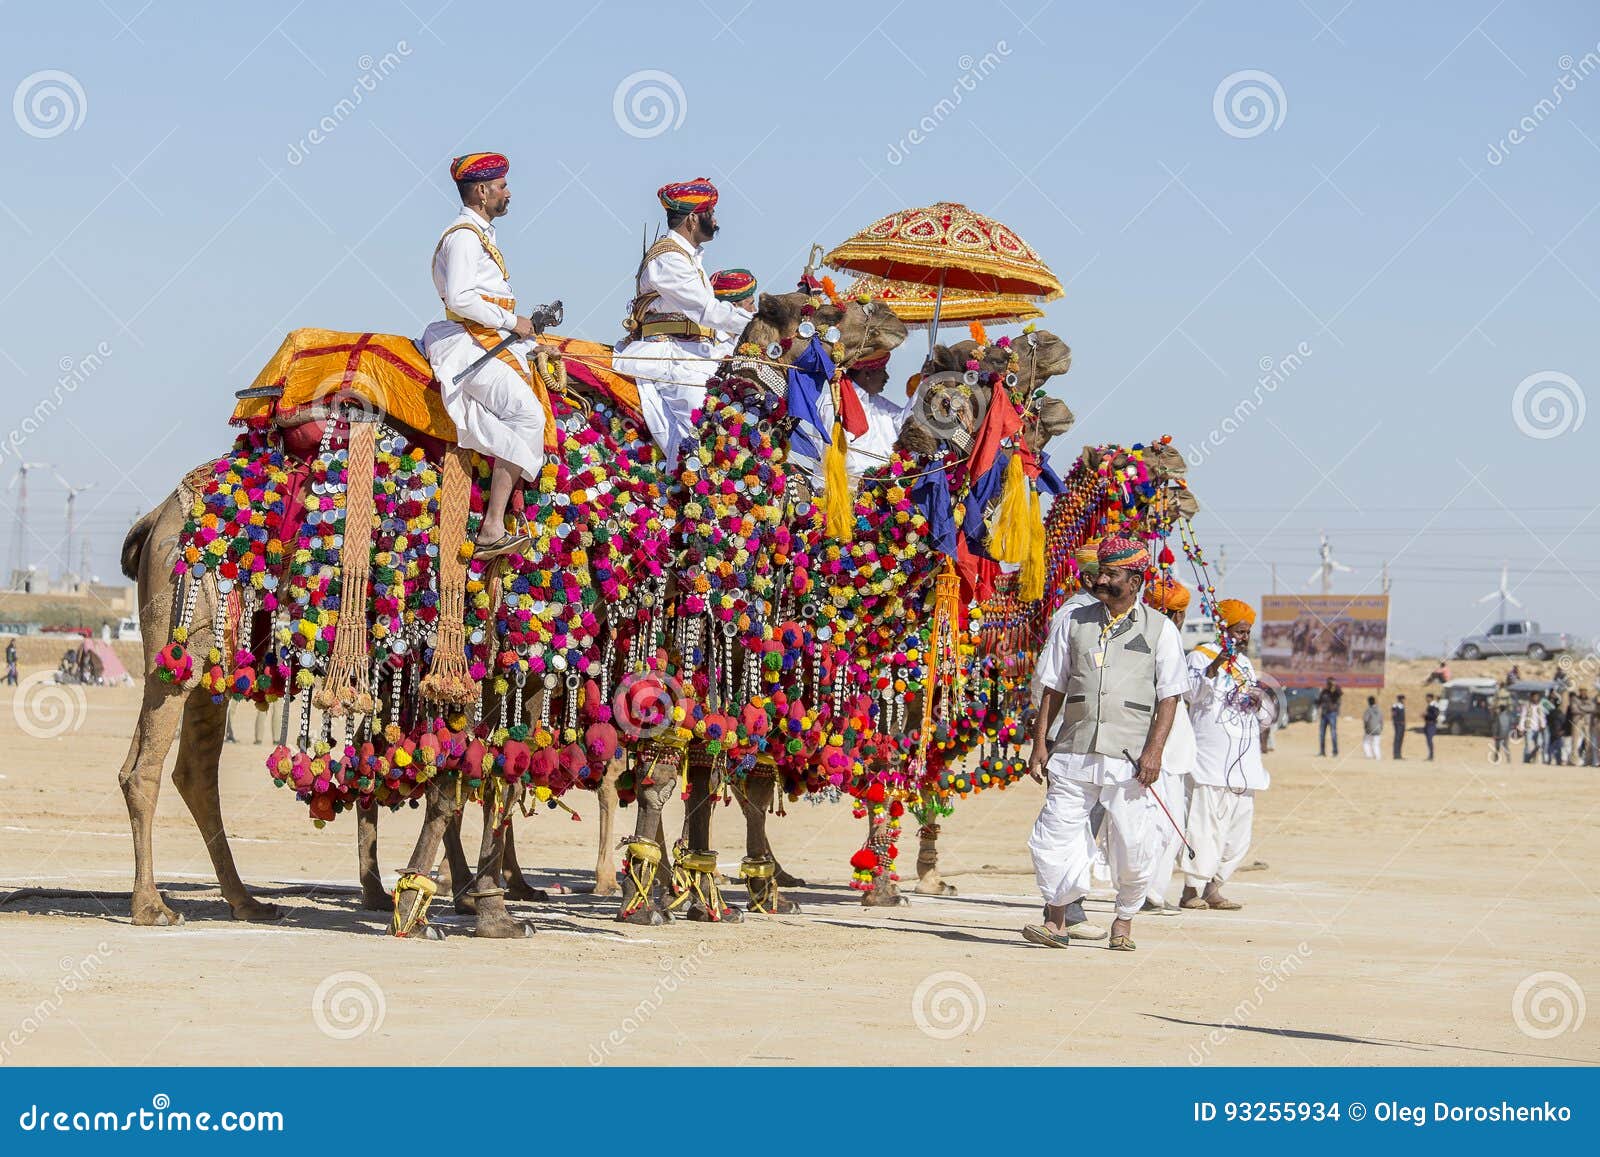 Die Kamele Und Indische Manner Die Traditionelles Rajasthani Kleid Tragen Nehmen An Herrn Teil Wustenwettbewerb Als Teil Des Wu Redaktionelles Stockbild Bild Von Tragen Teil 93255934